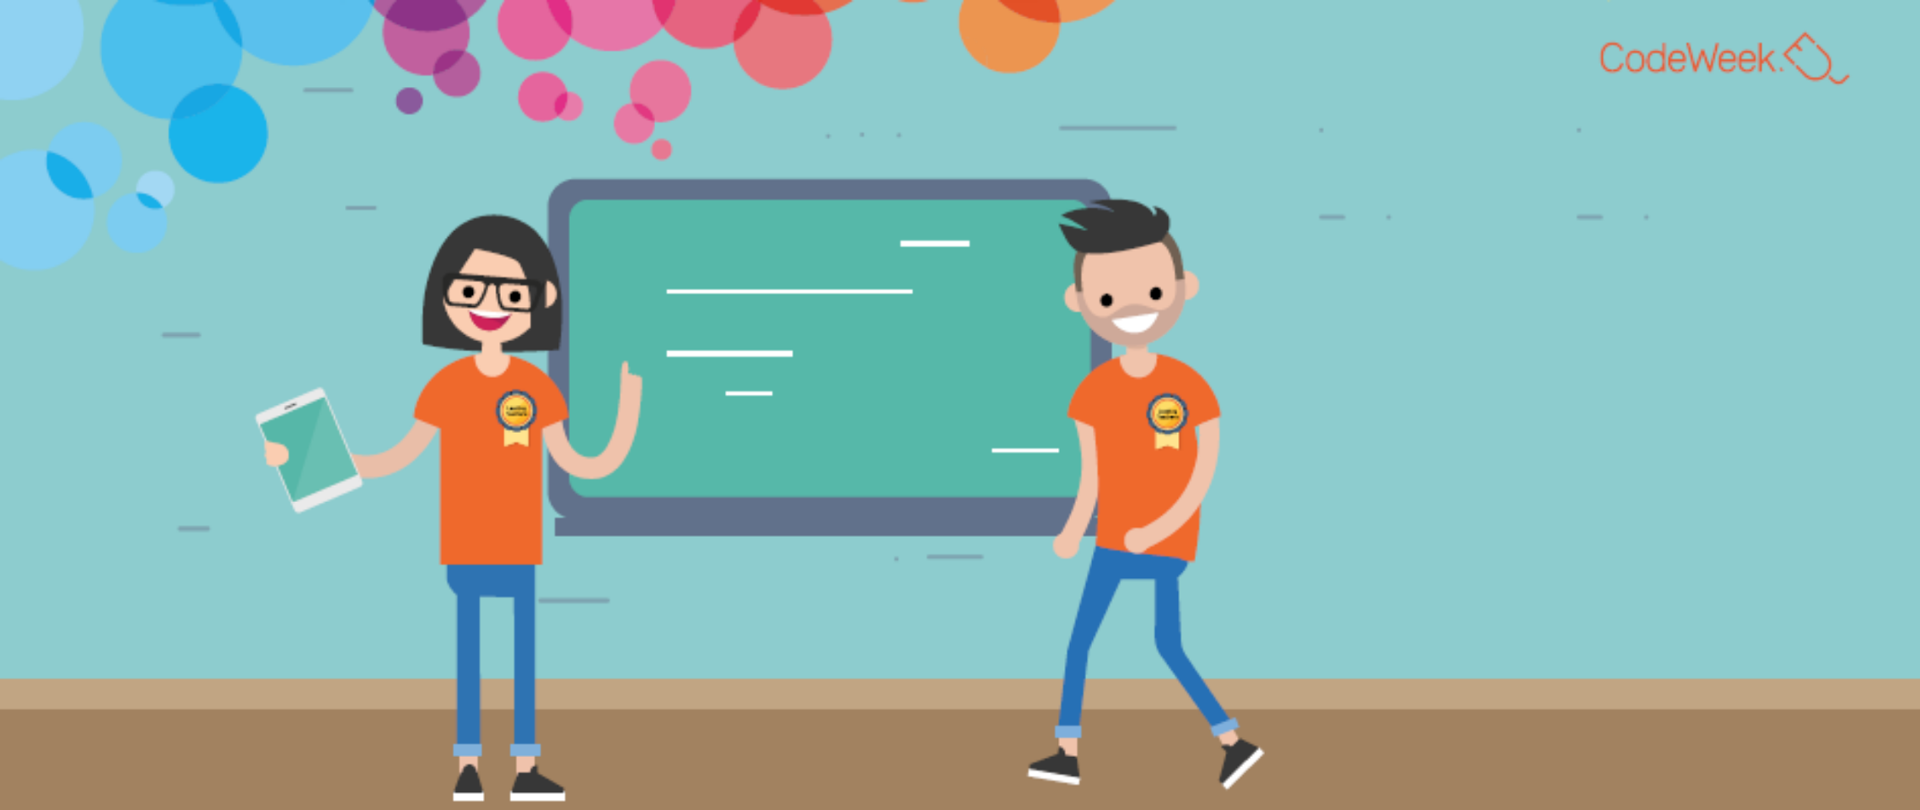 Na grafice widać dwie animowane postacie - kobietę i mężczyzę, oboje uśmiechnięci, w pomarańczowych koszulkach. Kobieta w ręku trzyma tablet, a palcem lewej ręki wskazuje na widoczną za nauyczycielami tablicę. W górnej części grafiki widać kolorowe kółka i napis "CodeWeek".